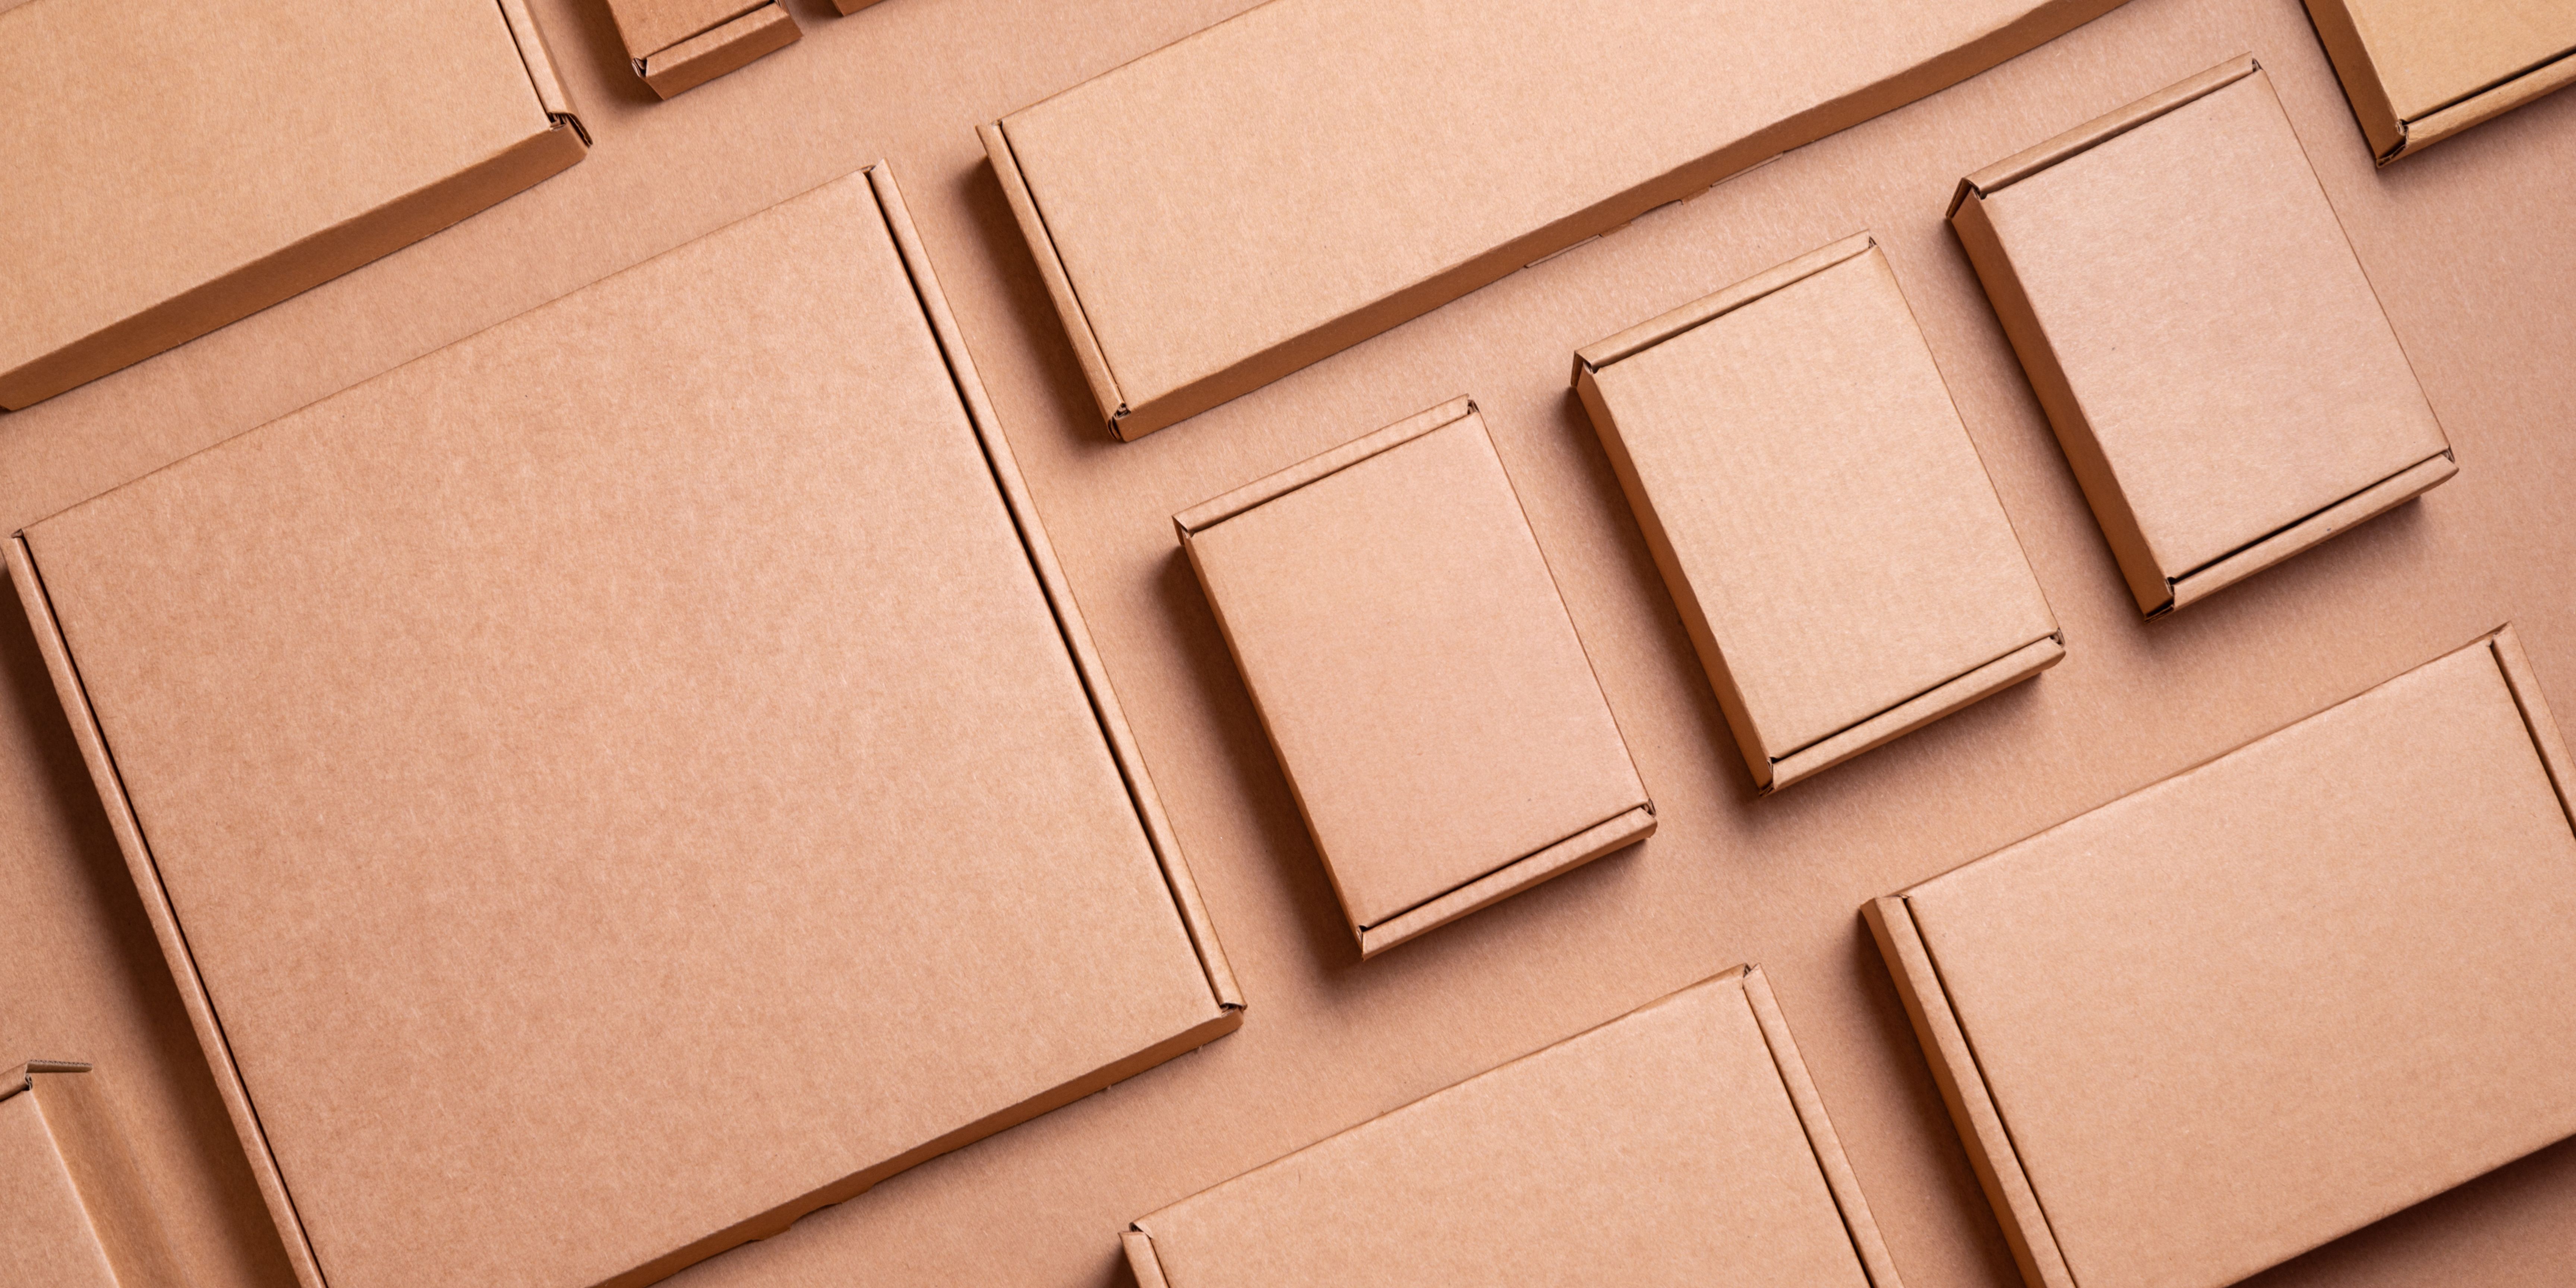 Comment choisir les bonnes dimensions et formats pour votre packaging ?